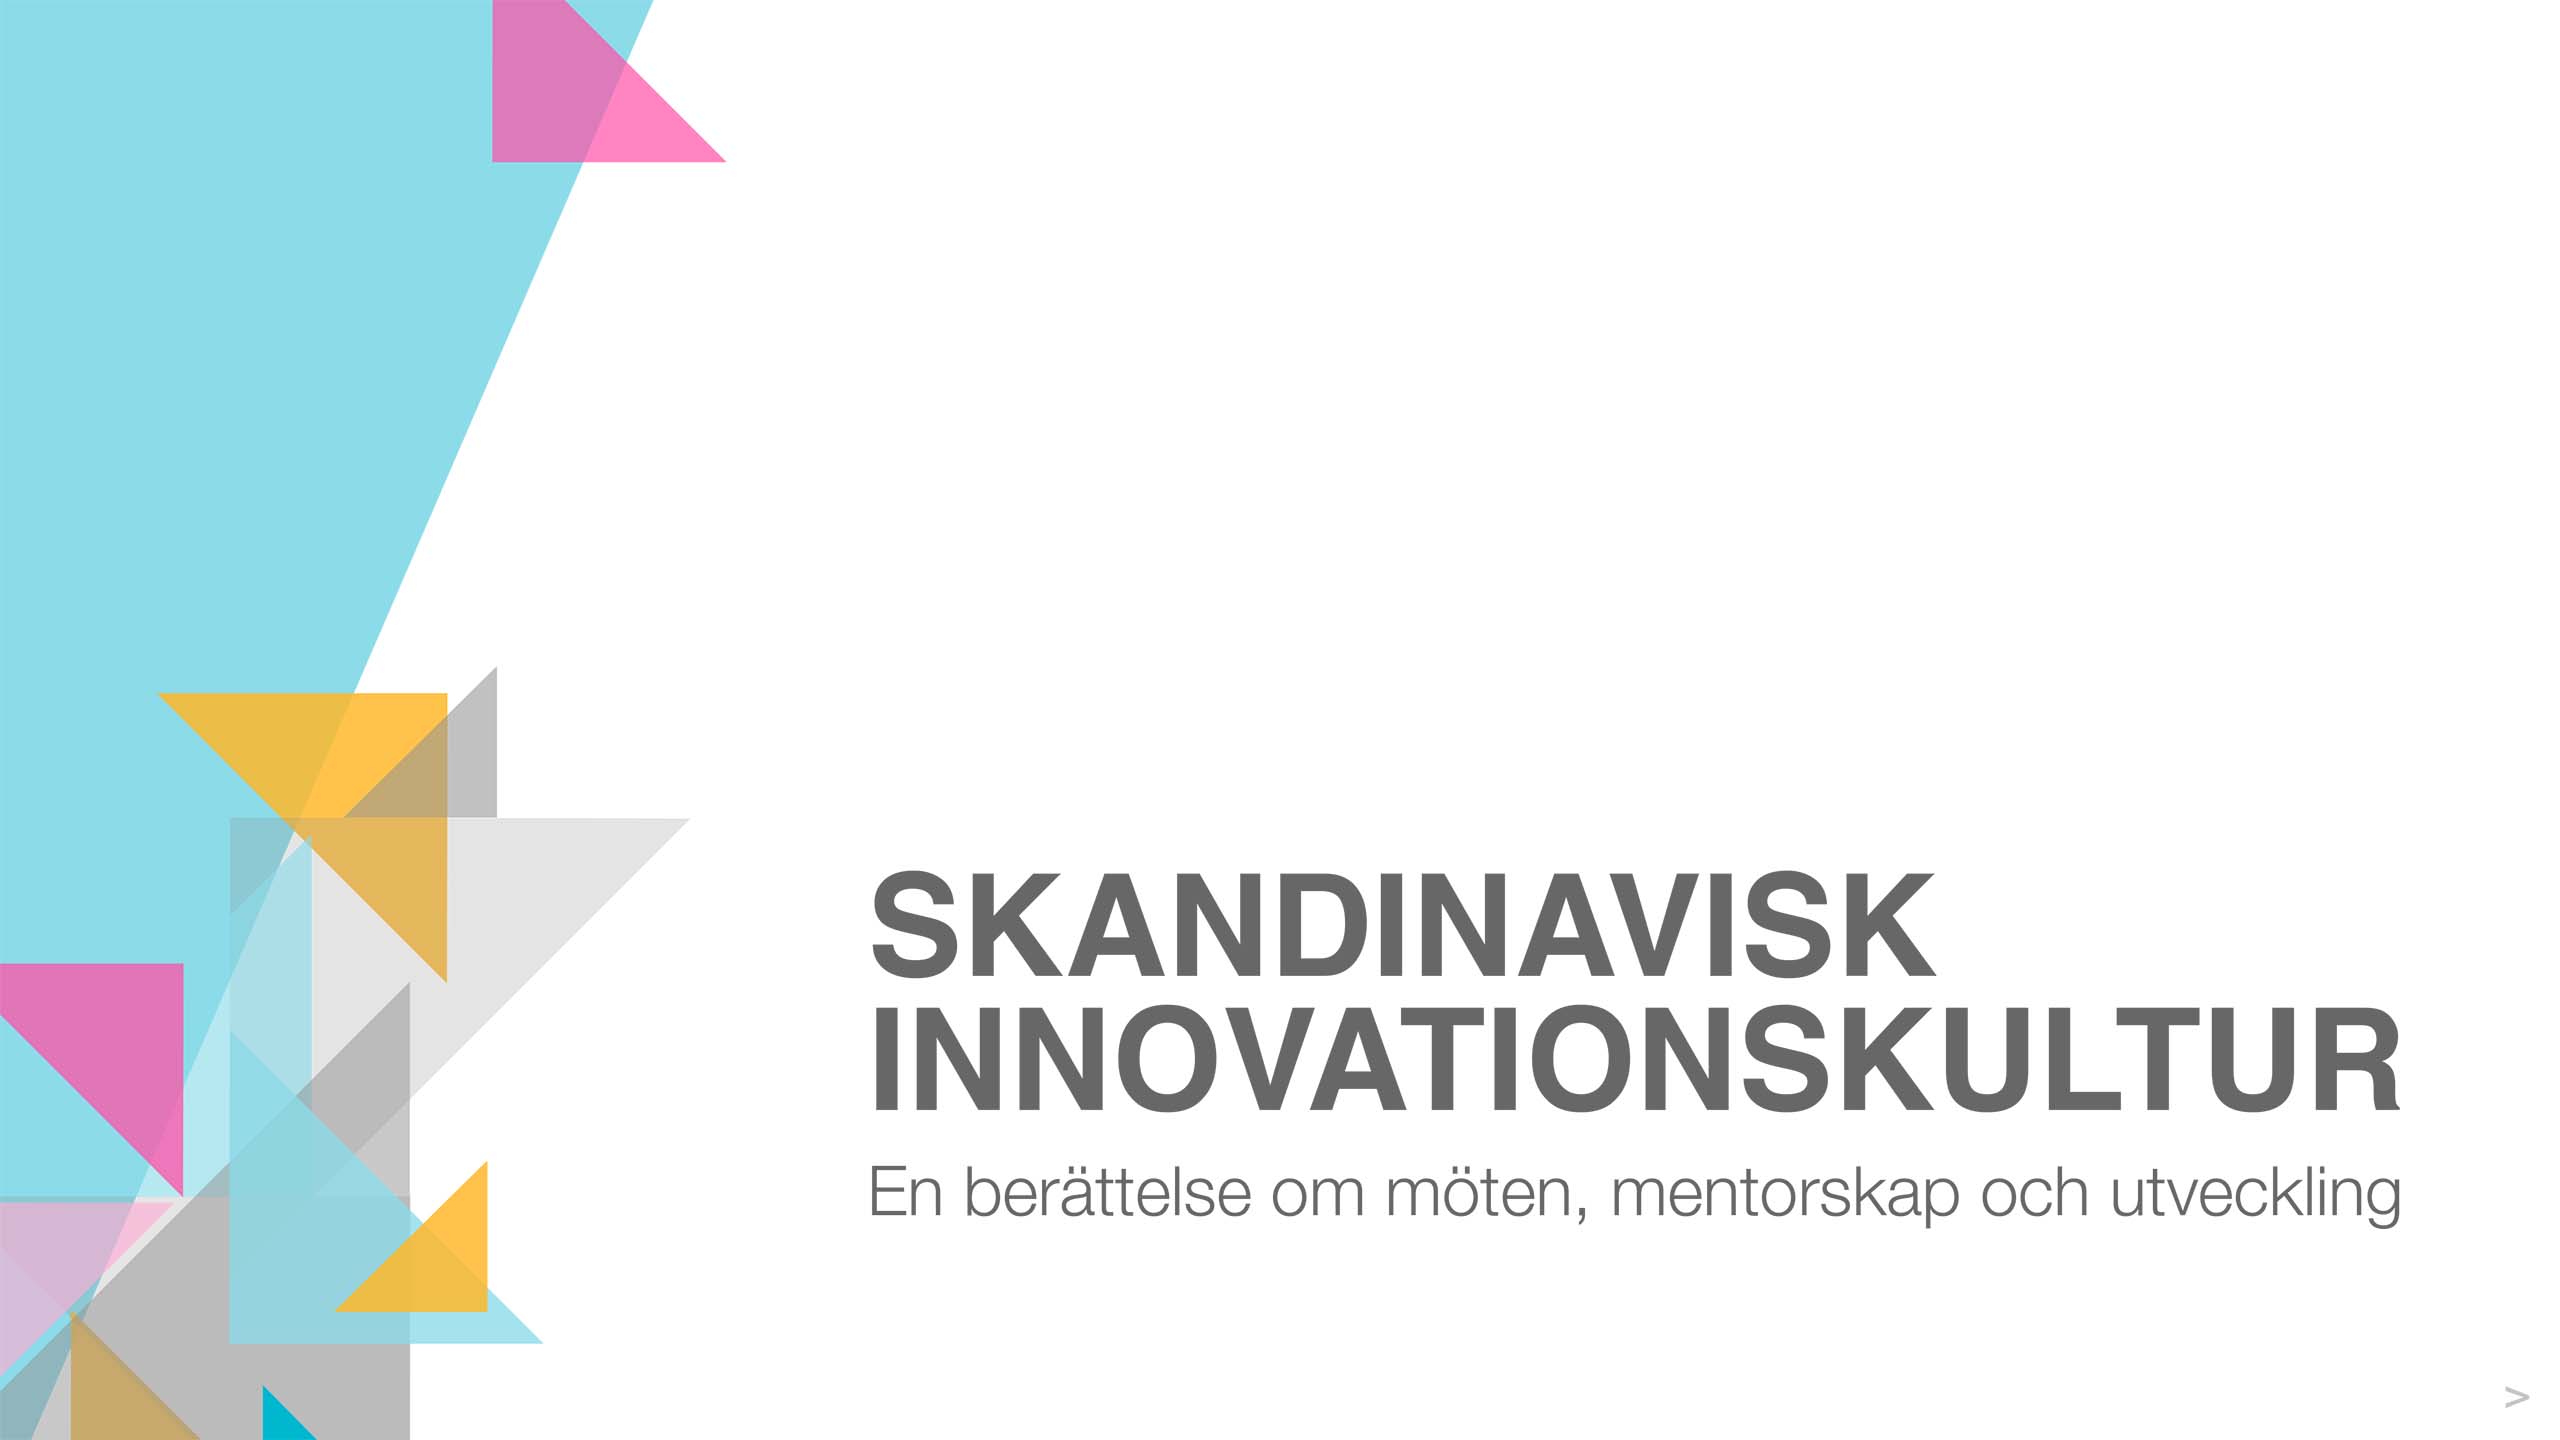 Skandinavisk innovationskultur: En berättelse om möten, mentorskap och utveckling omslagsbild.